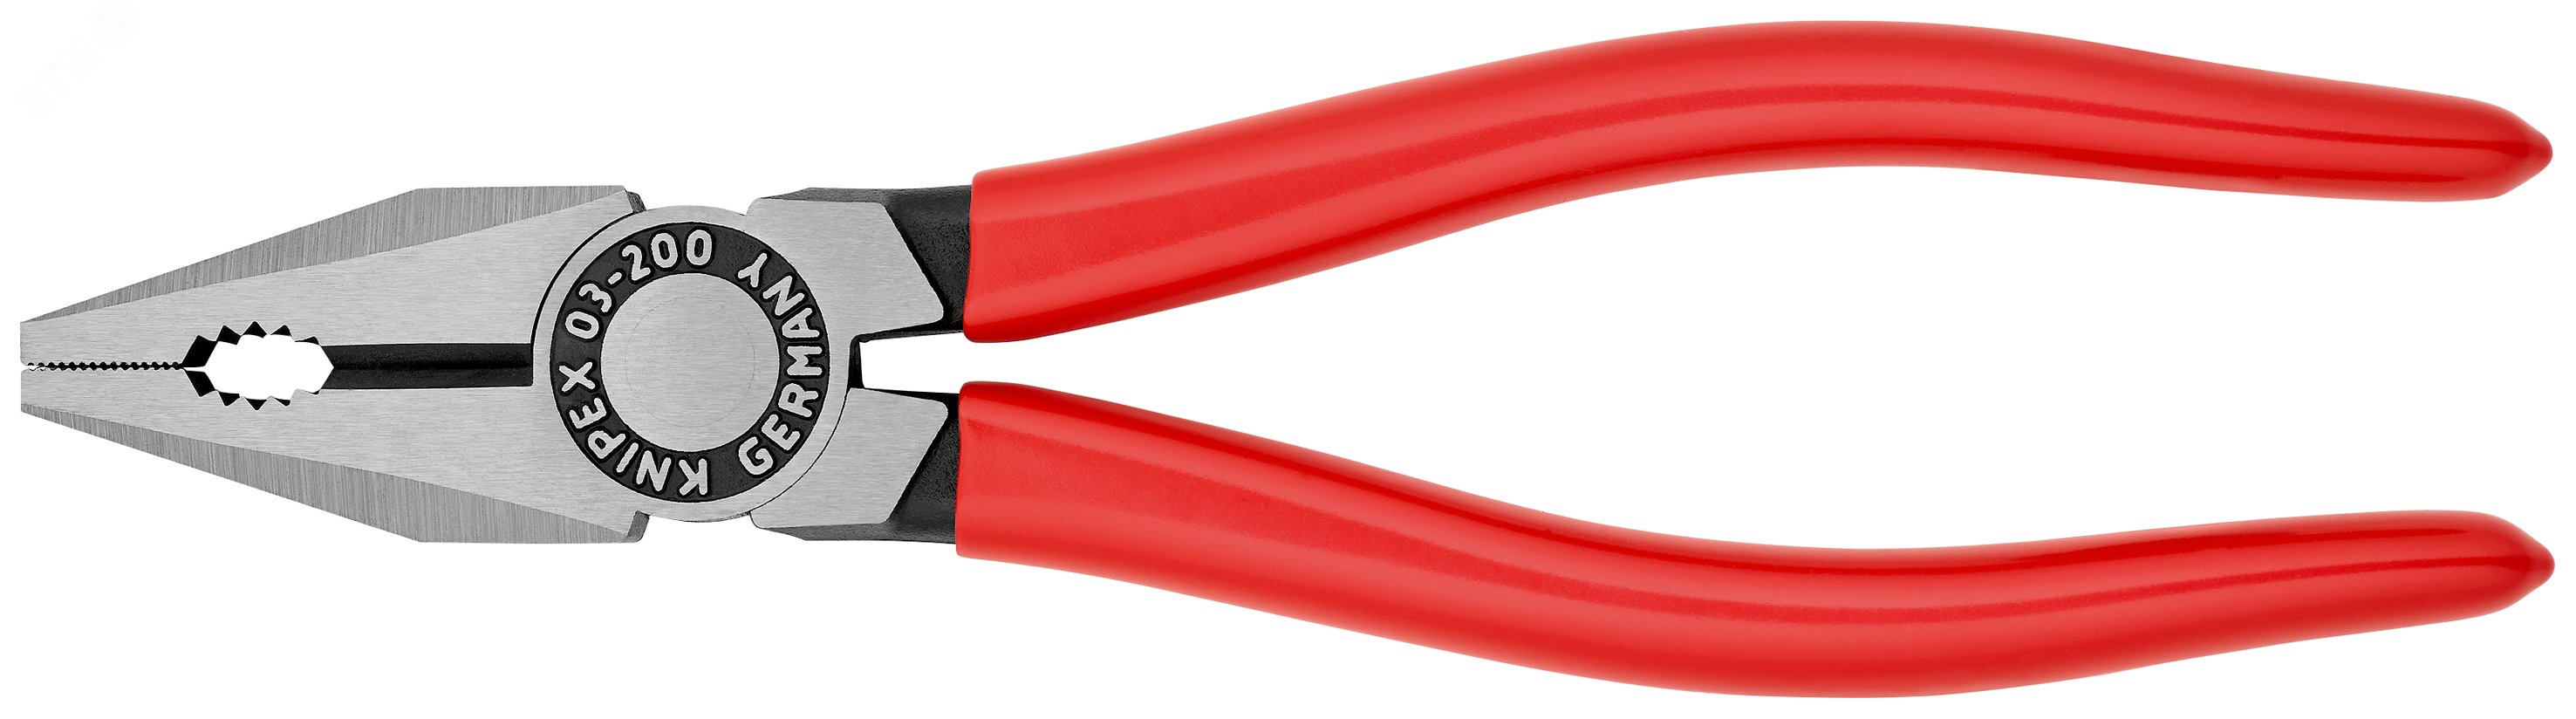 Плоскогубцы комбинированные резка - проволока средней твердости 38мм твердая проволока 25мм кабель 13мм (16мм) L=200мм обливные рукоятки блистер цвет черный KN-0301200SB KNIPEX - превью 3